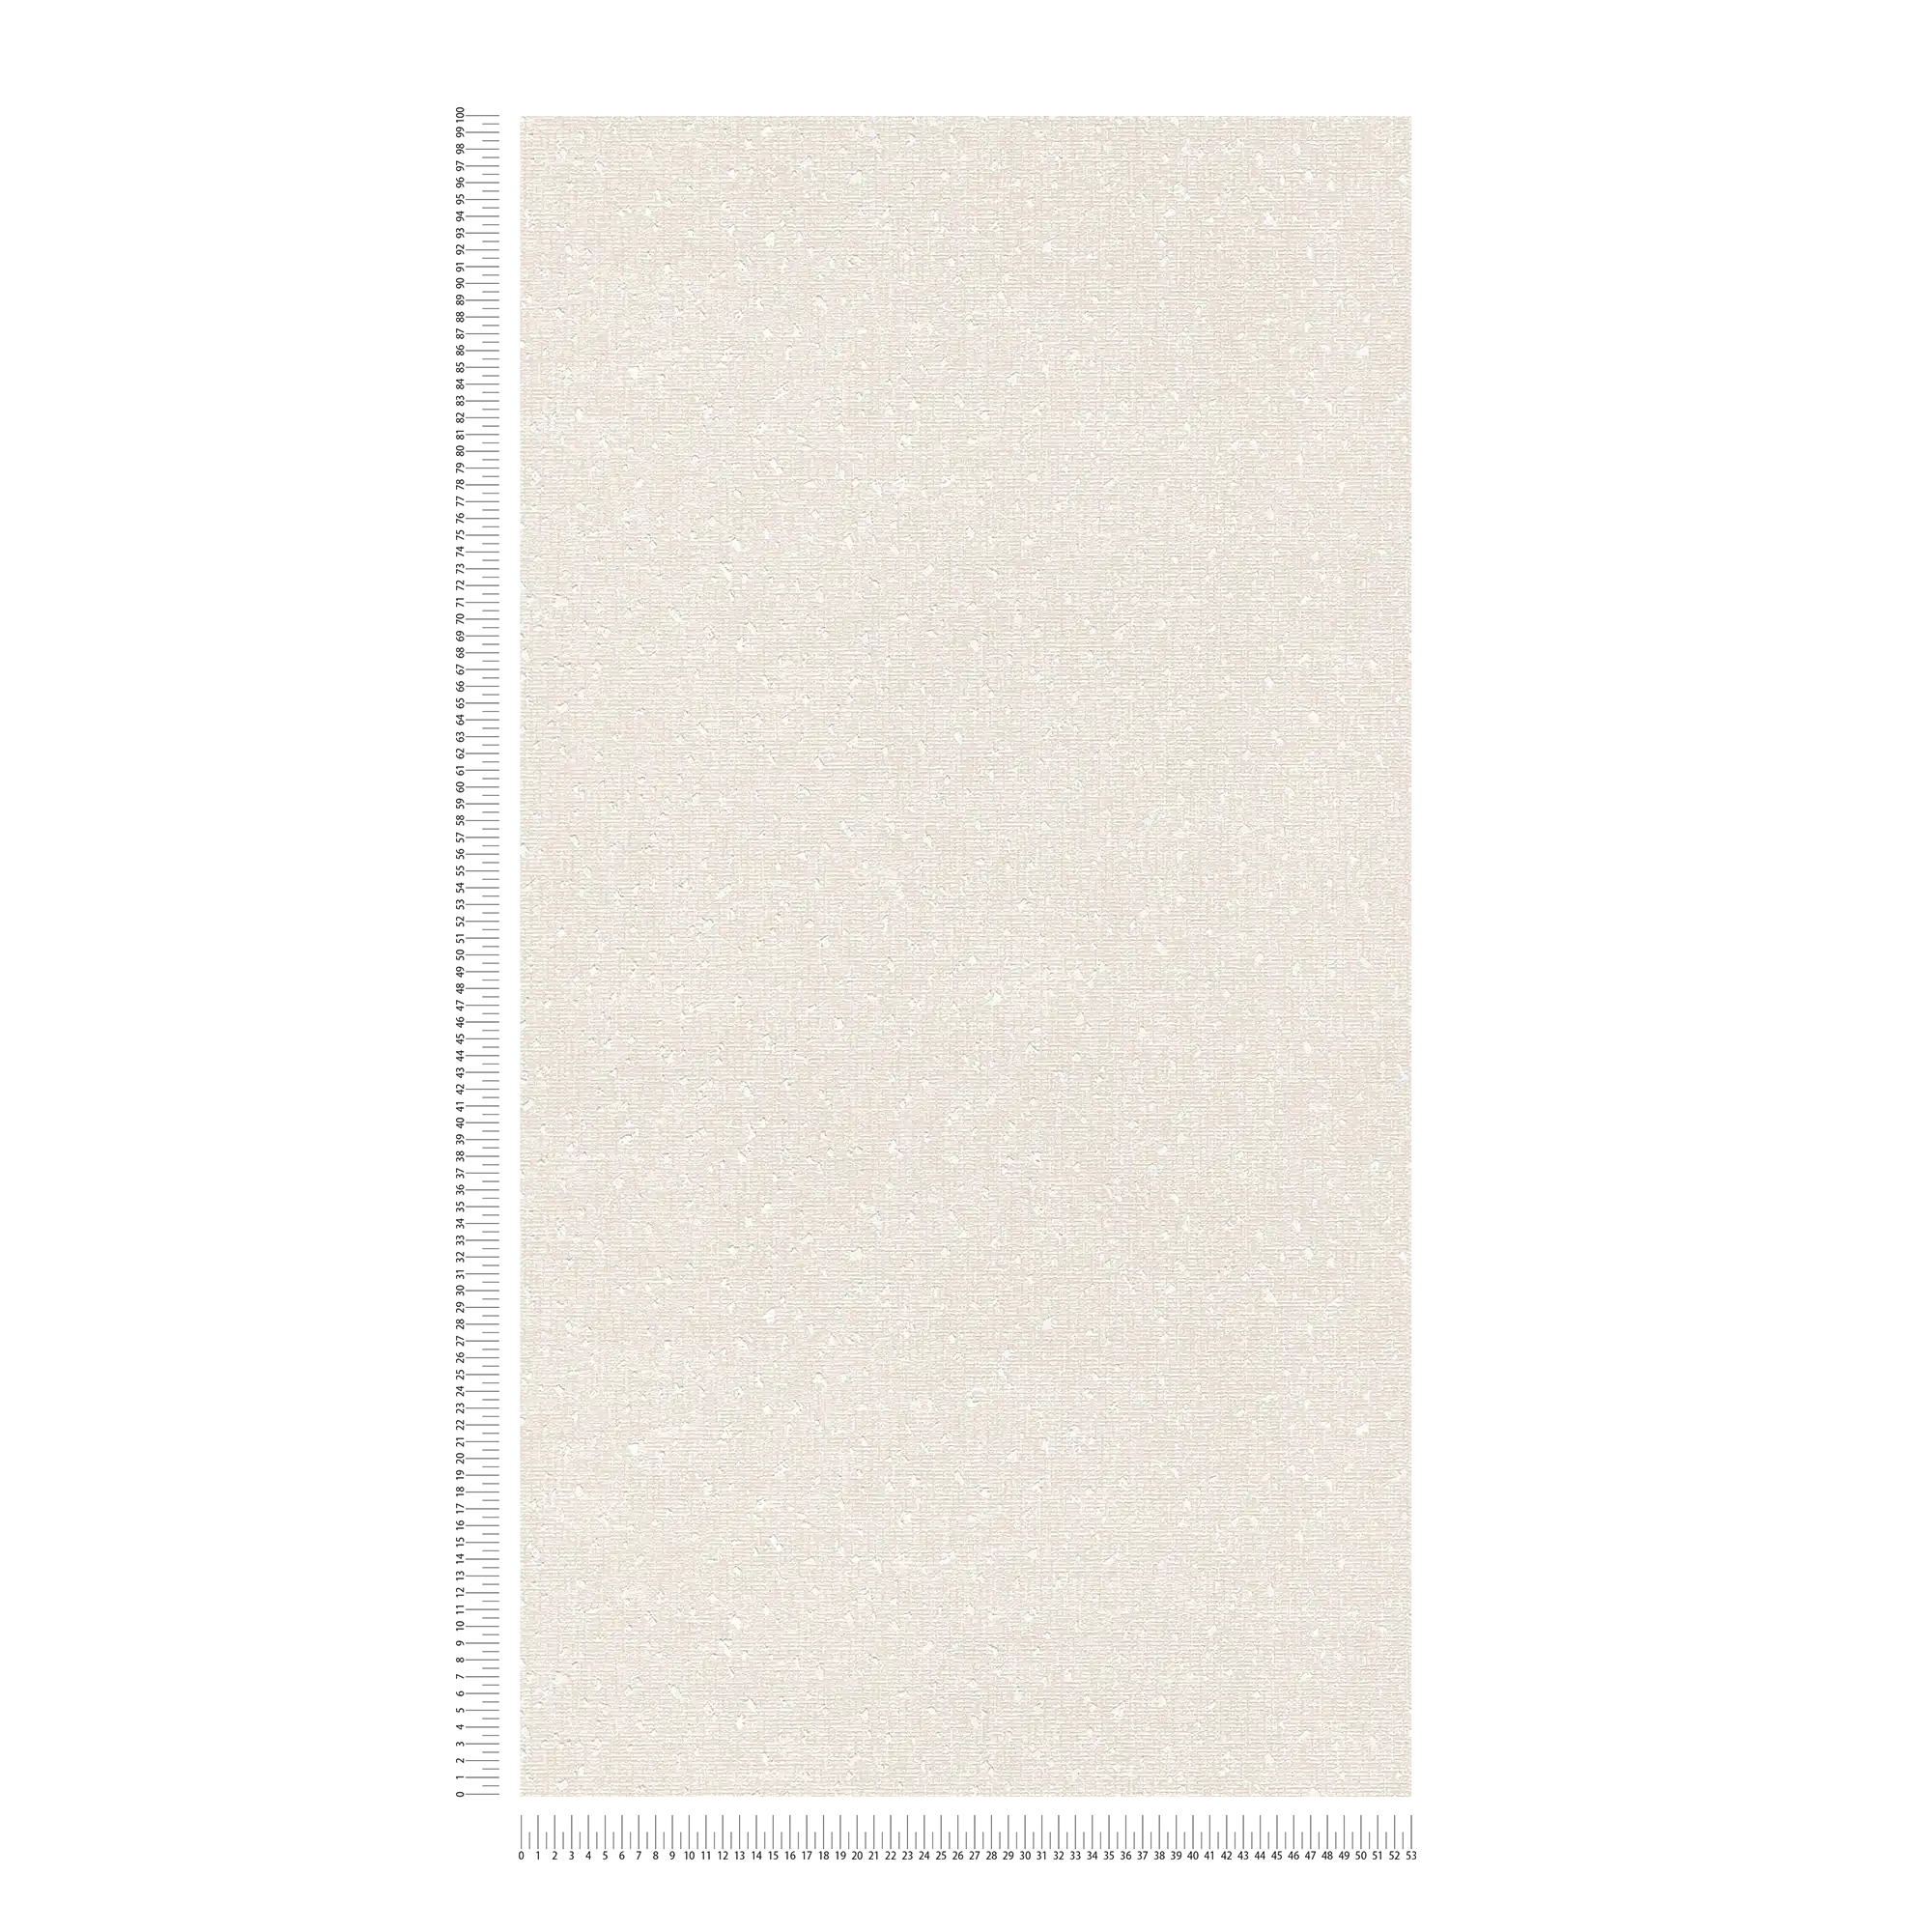             Carta da parati con struttura tessile e accenti metallici - crema, metallizzato
        